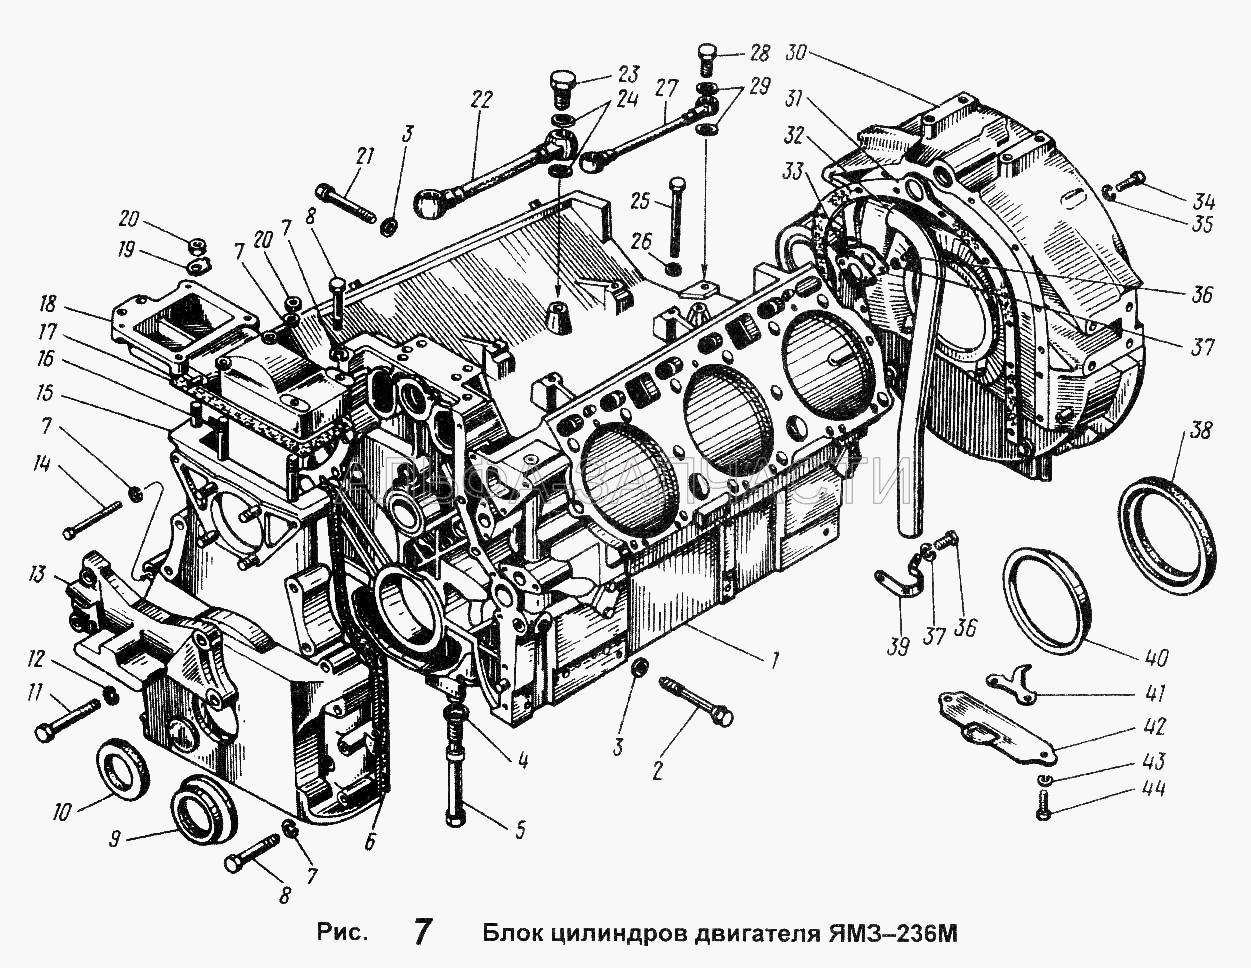 Блок цилиндров двигателя ЯМЗ-236М (310044-П29 Болт) 